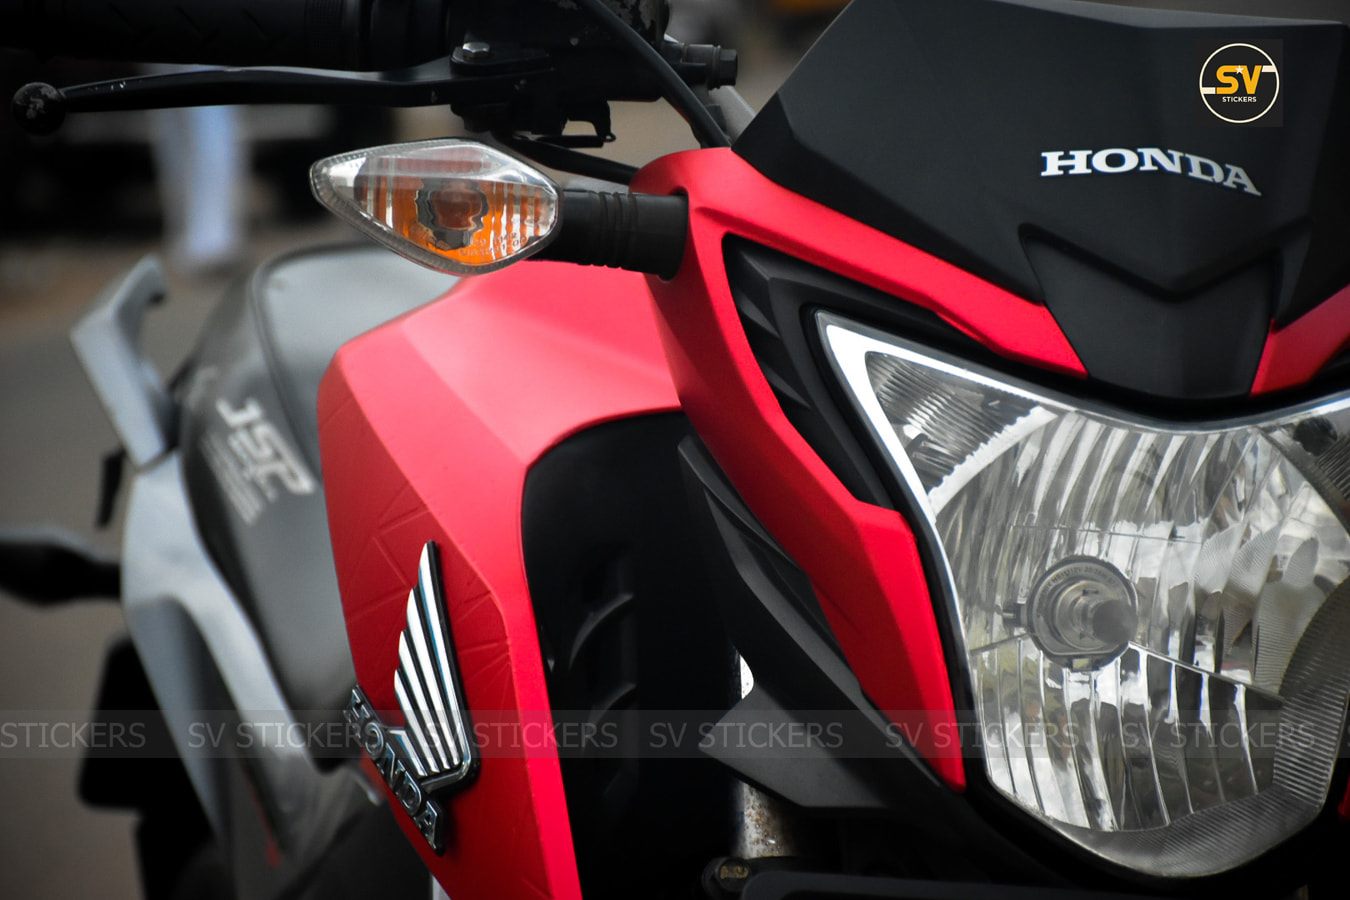 Meet Matte Metallic Red Honda Hornet 160 by SV Stickers - shot